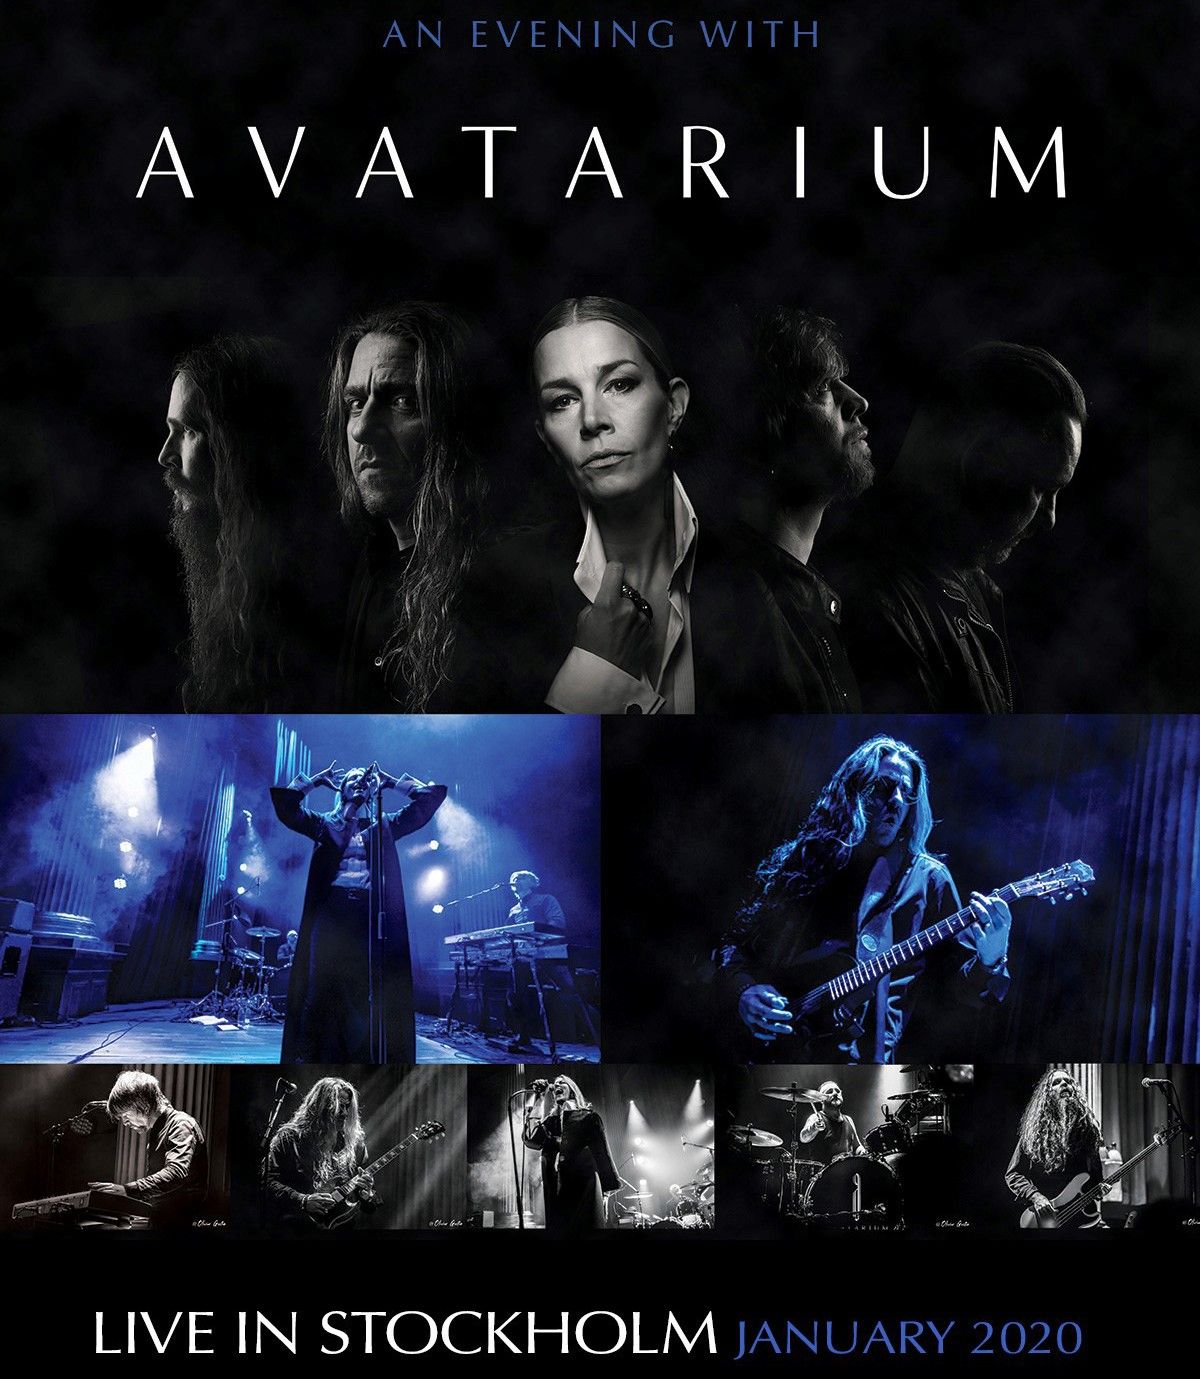 "An Evening With Avatarium" ab 4. Dezember auf allen Streaming-Plattformen